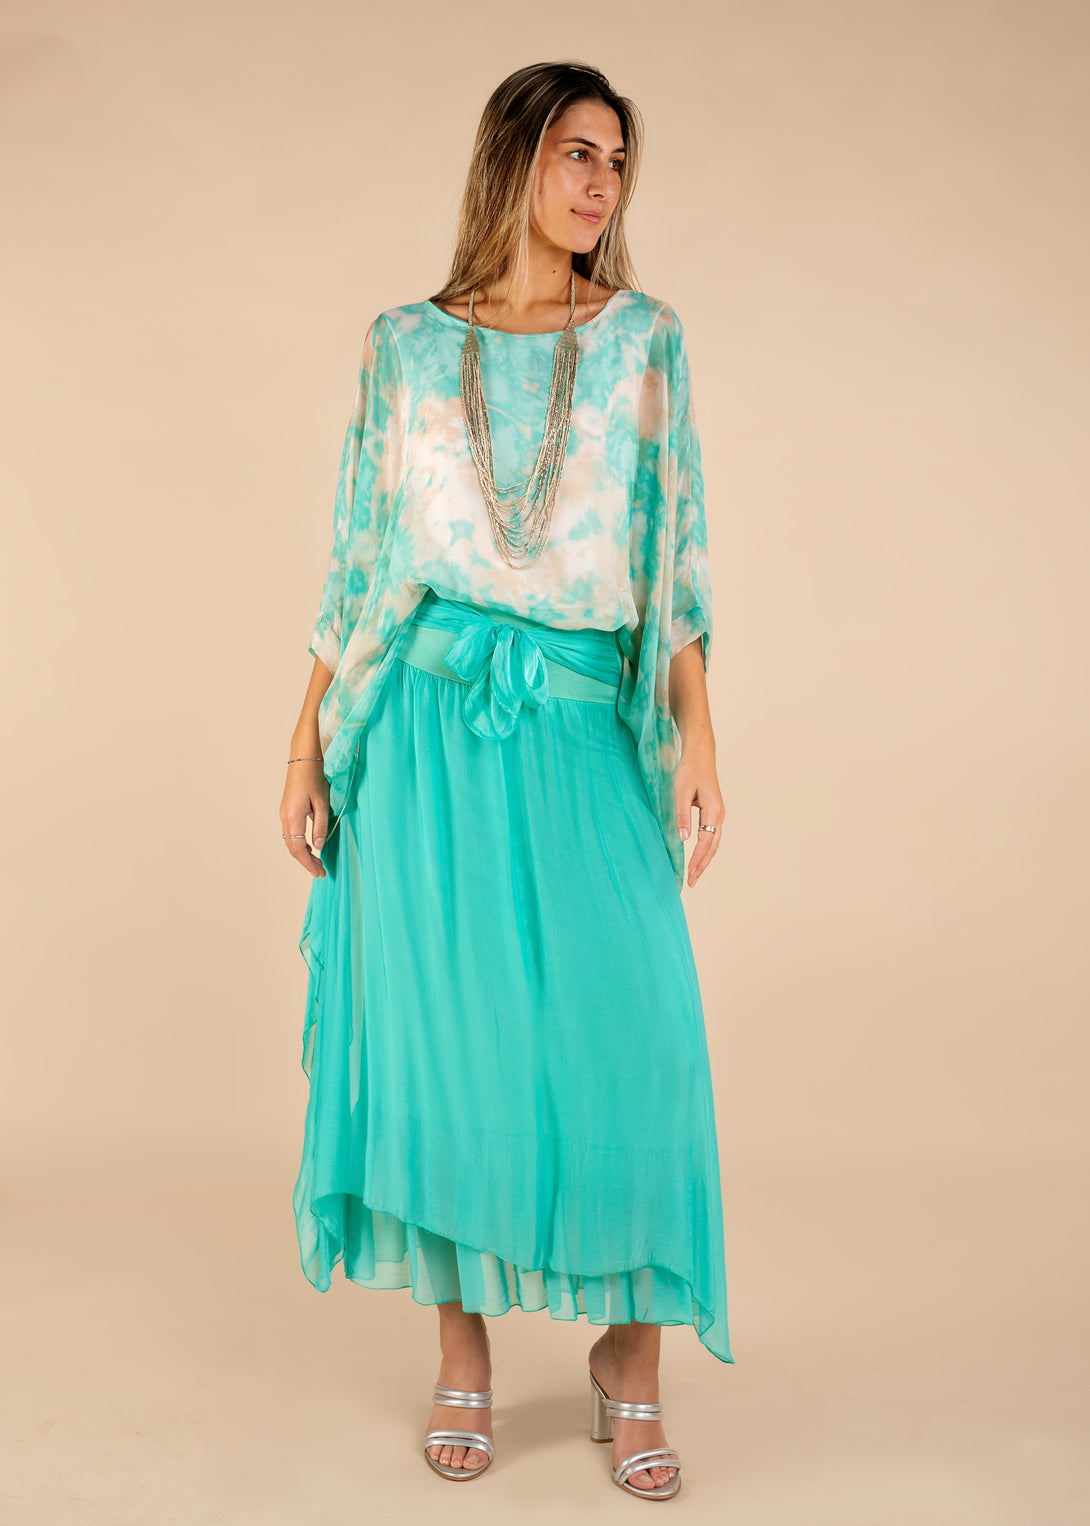 Nala Silk Skirt in Sea Green - Imagine Fashion